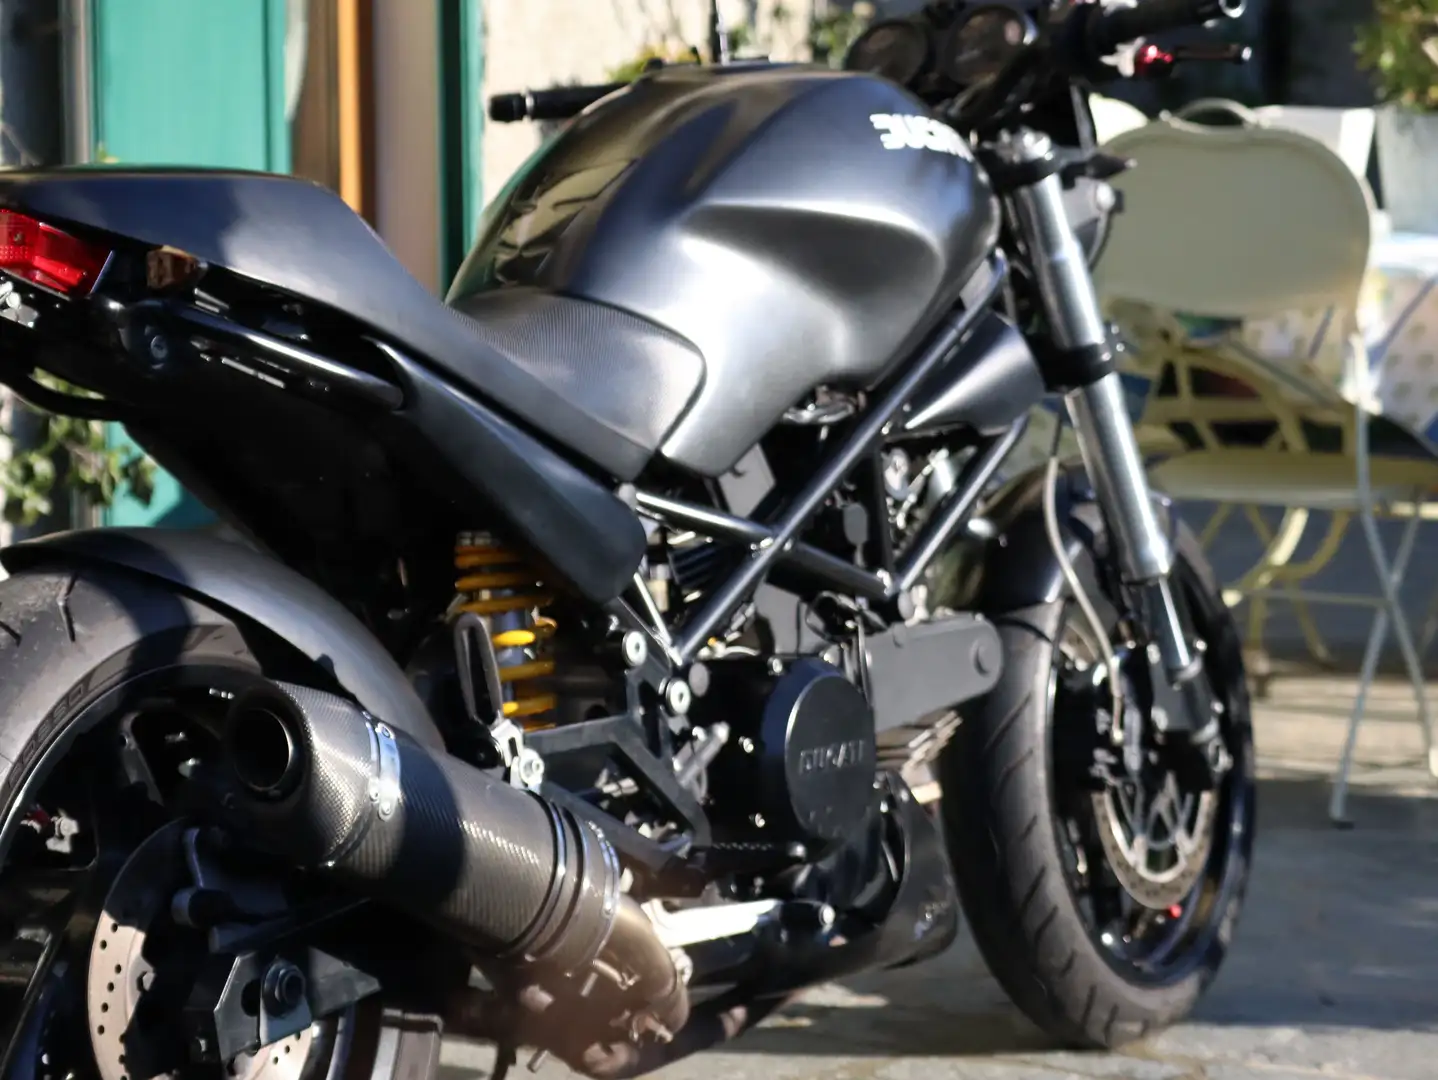 Ducati Monster 695 Negro - 2